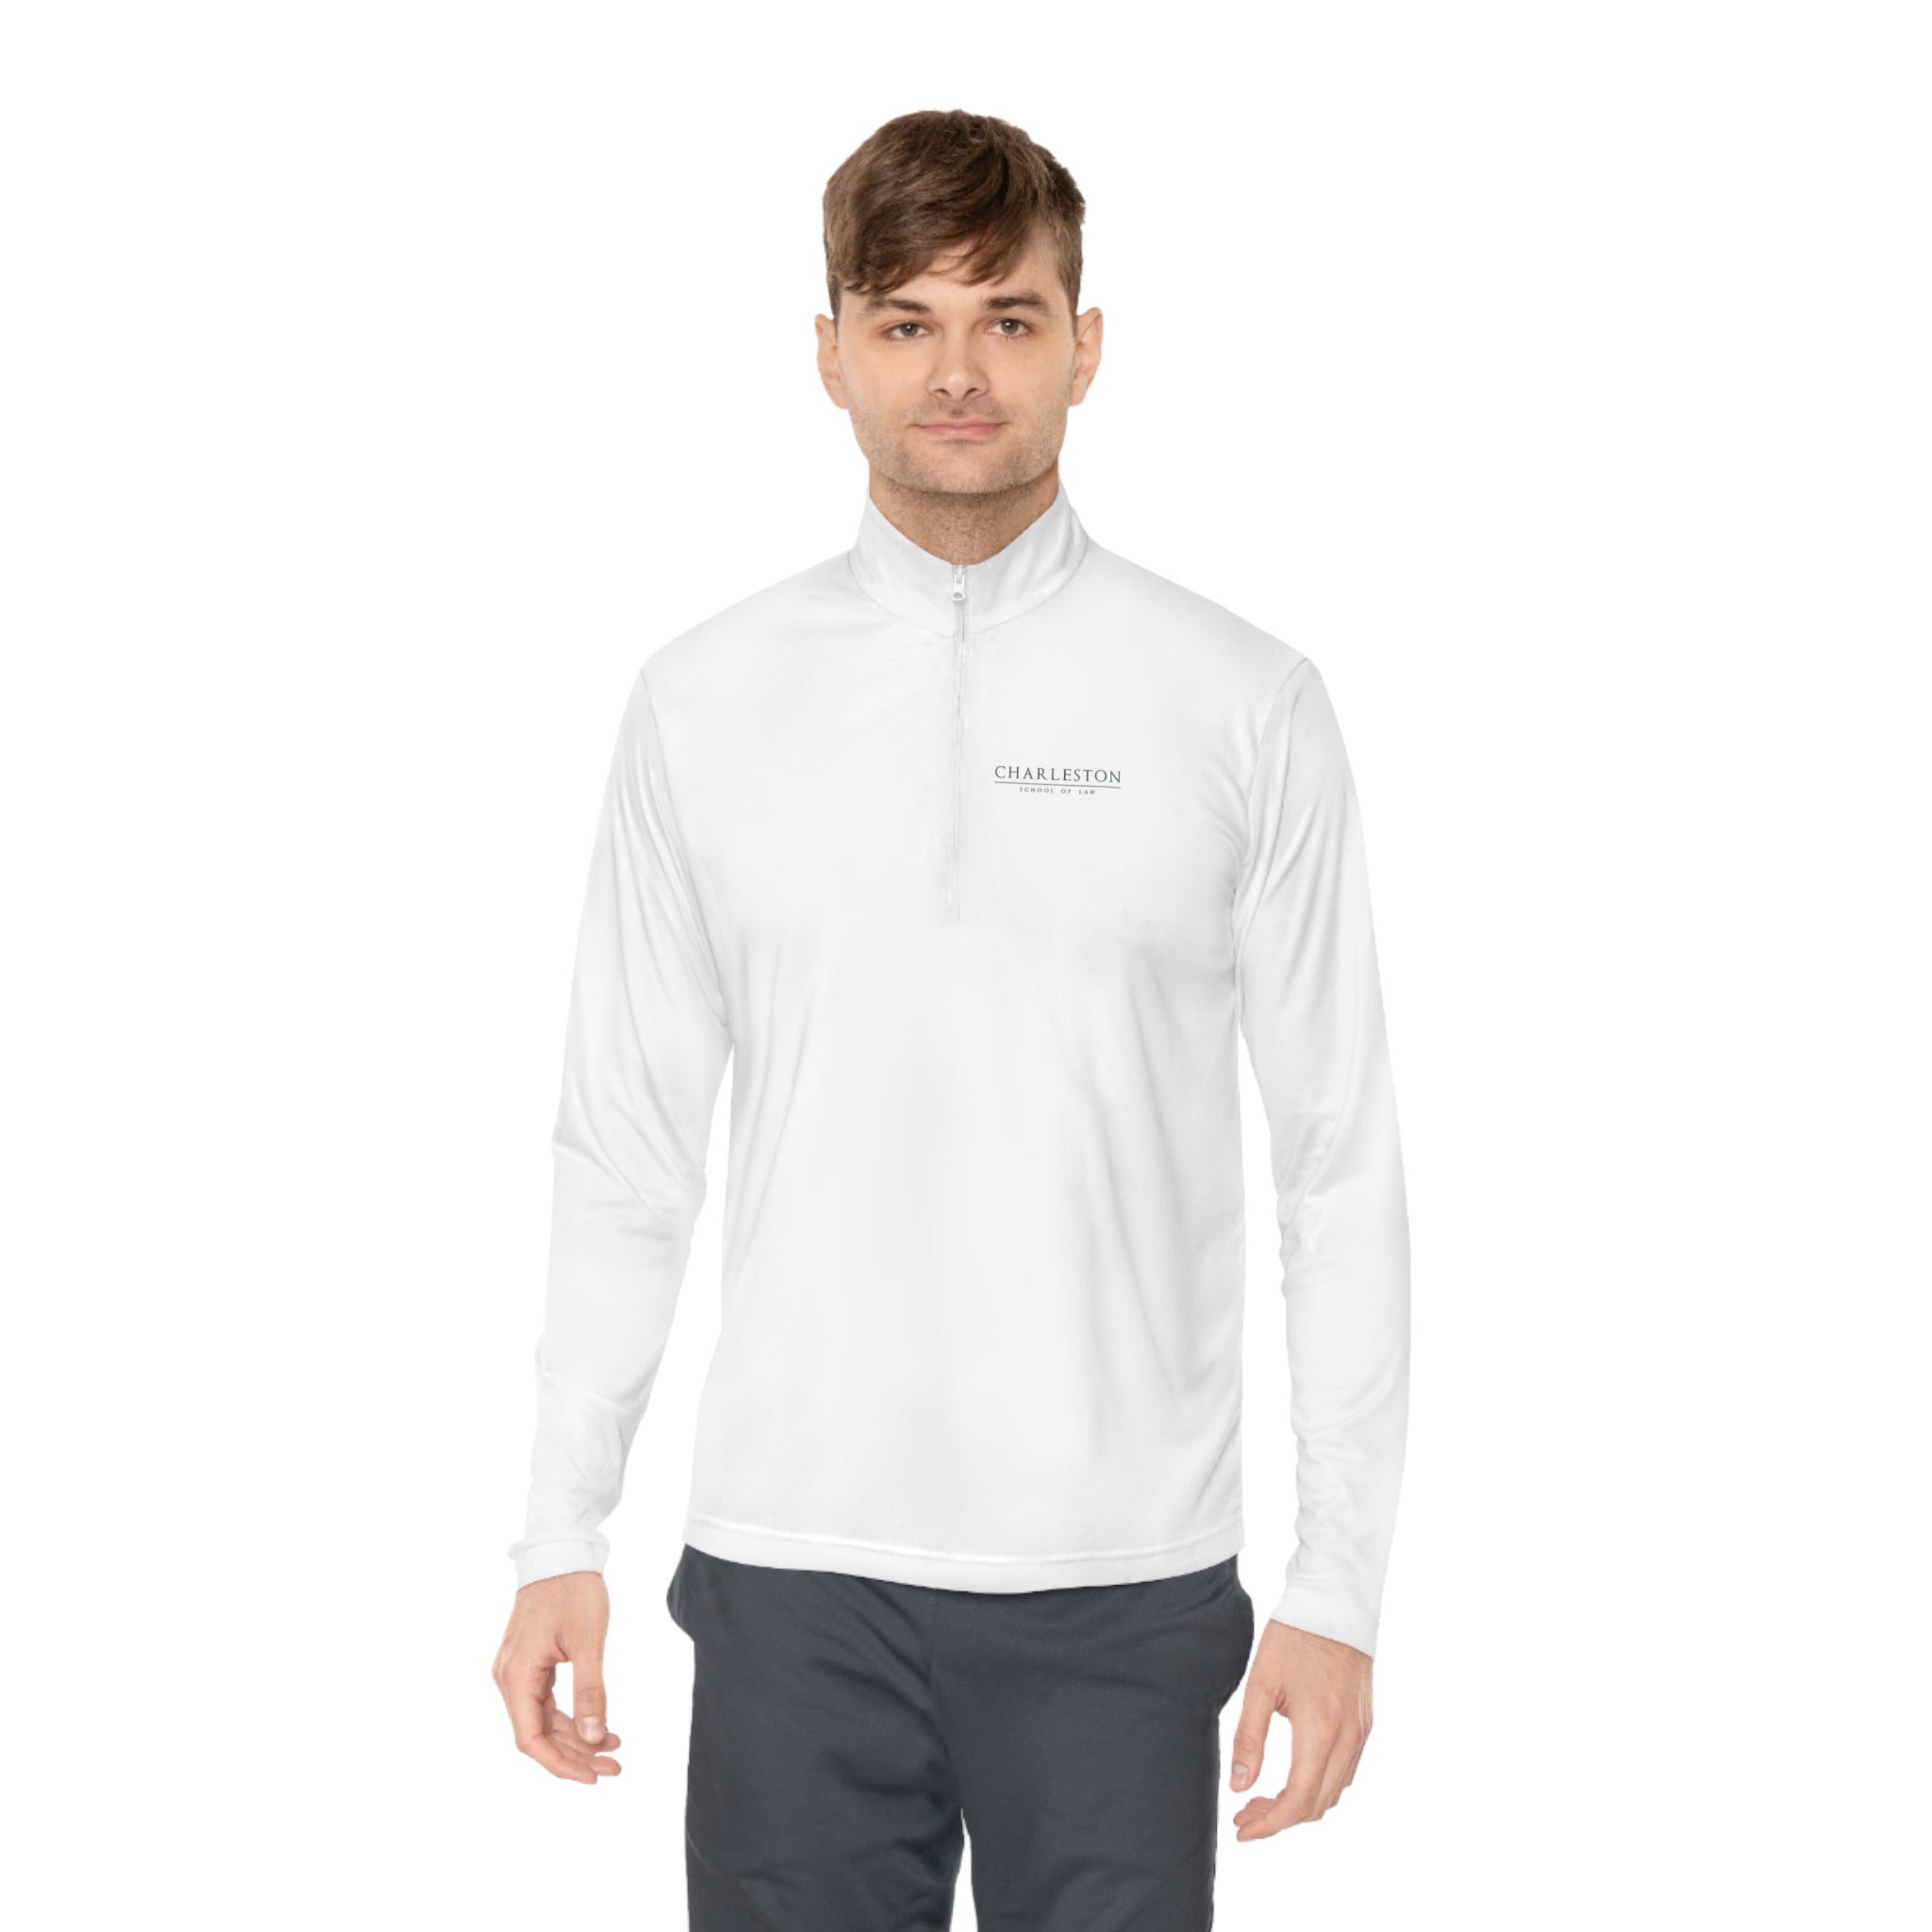 CSOL Unisex Quarter-Zip Pullover